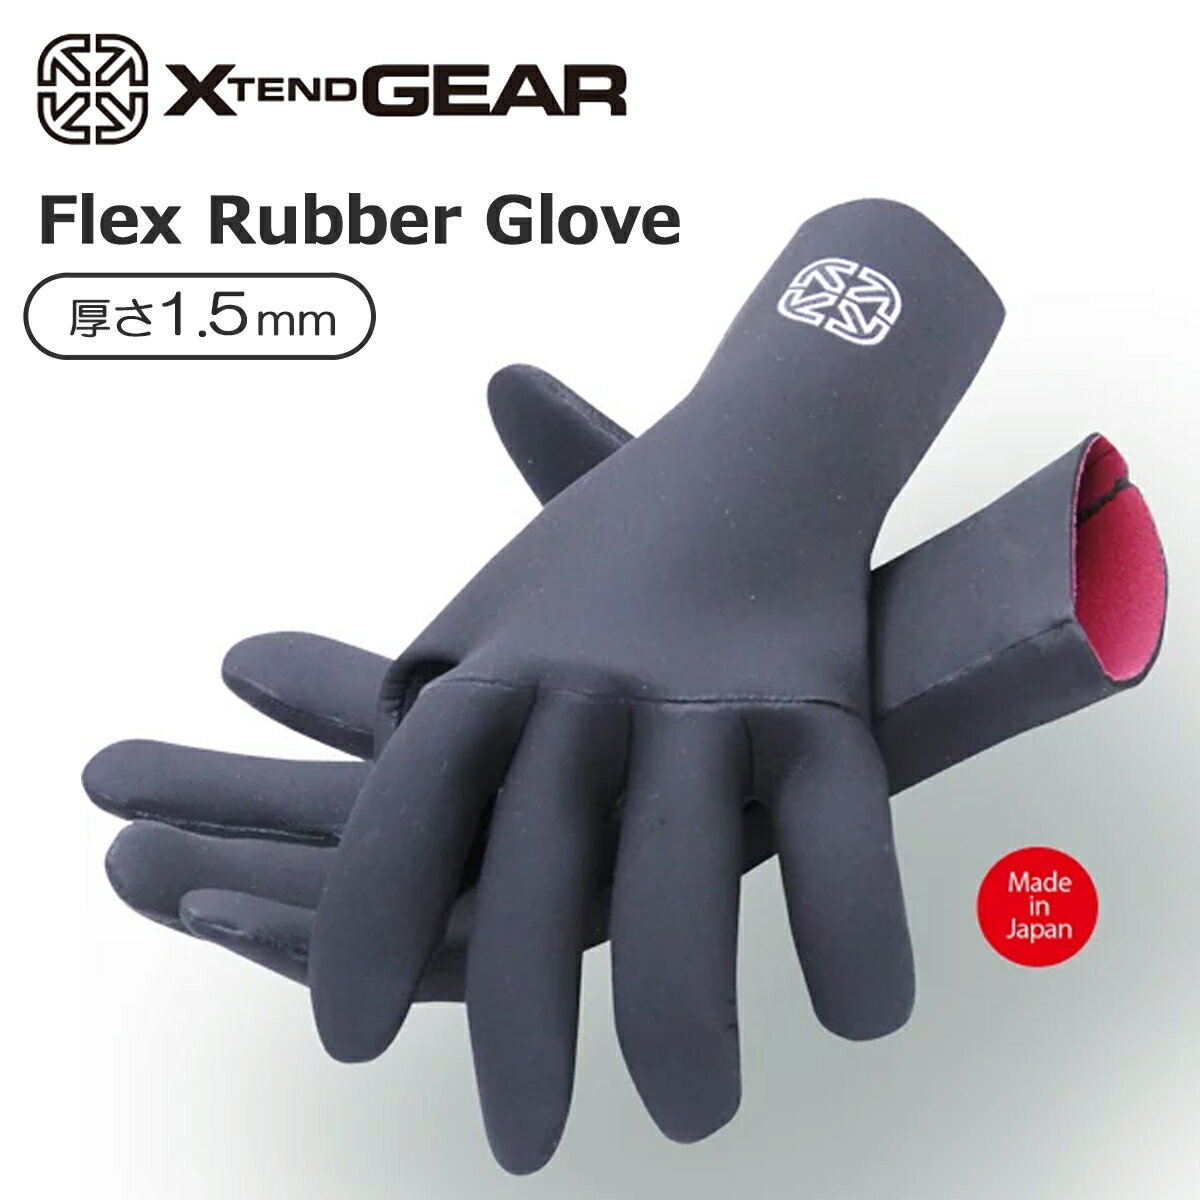 1.5mm Flex Rubber Glove 違和感を最小限に抑えた極薄メッシュラバーグローブ。 表面は耐久性の高い国産メッシュスキンが使用されています。 また指の付け根に耐久性と防水性を高めるリキッドテープ加工が施されています。 【X tend Gear】 熟練職人の「匠の技」で作られる本物のサーフアイテム 1991年ウエットスーツの製造を開始、常に新しいスタイルへの挑戦と妥協を許さない クラフトマン達の姿勢が、世界中のハイレベルなサーファー達から絶大な指示を受け日本を中心にアメリカ、オーストラリア、ヨーロッパなどに商品を供給しています。 また私達は、変化とトレンドの移り変わりが激しいサーフィン業界において、最先端の技術を駆使し日本のマテリアルメーカー協力のもと30年近くウェットスーツを作り続けています。 防寒性、運動性能を求められるウェットスーツ作りのノウハウを取り入れてサーフブーツ、グローブ、ヘッドキャップなどを開発をしてきました。 一朝一夕では身に付けることができないクラフトマン達の「匠の技」が最高品質の製品を作り上げ、製造に関わる生地のカッティング、専用ミシンでの縫製、高度な接着技術などの全工程を自社工場でジャパンブランドの誇りを胸にハンドメイドで行っています。（メイドインジャパンシリーズ） ■ 商品詳細 ■ ■厚み：1.5mm ■サイズ：S / M / L ○デザイン等、予告なしに変更となる場合があります。ご了承ください。 ○掲載商品の色は、できる限り現品と同じになるよう努めておりますが、ご使用のパソコン環境により多少色合いが異なる場合がございます。著しい色の相違は御座いませんのでご安心ください。 ○お急ぎのお客様は、ご確認していただく事をお勧め致します。 オーシャン スポーツ速達メール便【ロケット便】 代引き決済はご利用頂けません。※代金引換え決済の場合は、お届けまで当店通常宅配便の日数と送料が別途加算されます。(着日/時間指定不可) ※こちらの商品はパッケージ無しでの発送となります。 ※コチラの商品はメール便（ネコポス）での発送となります。 メール便の配送はポスト投函でのお届けとなります。 手渡しでの配達や日時指定、代引きでのお支払等をご希望の場合は『小型宅配便対応』の商品ページにてご注文頂きますようにお願い致します。 ※クレジットカード/銀行振り込み/楽天(etc)決済など、15時までに決済完了の場合は即日発送！(※15時以降の決済確認は翌日以降ご入金確認後の発送） メーカー希望小売価格はメーカーサイトに基づいて掲載しています